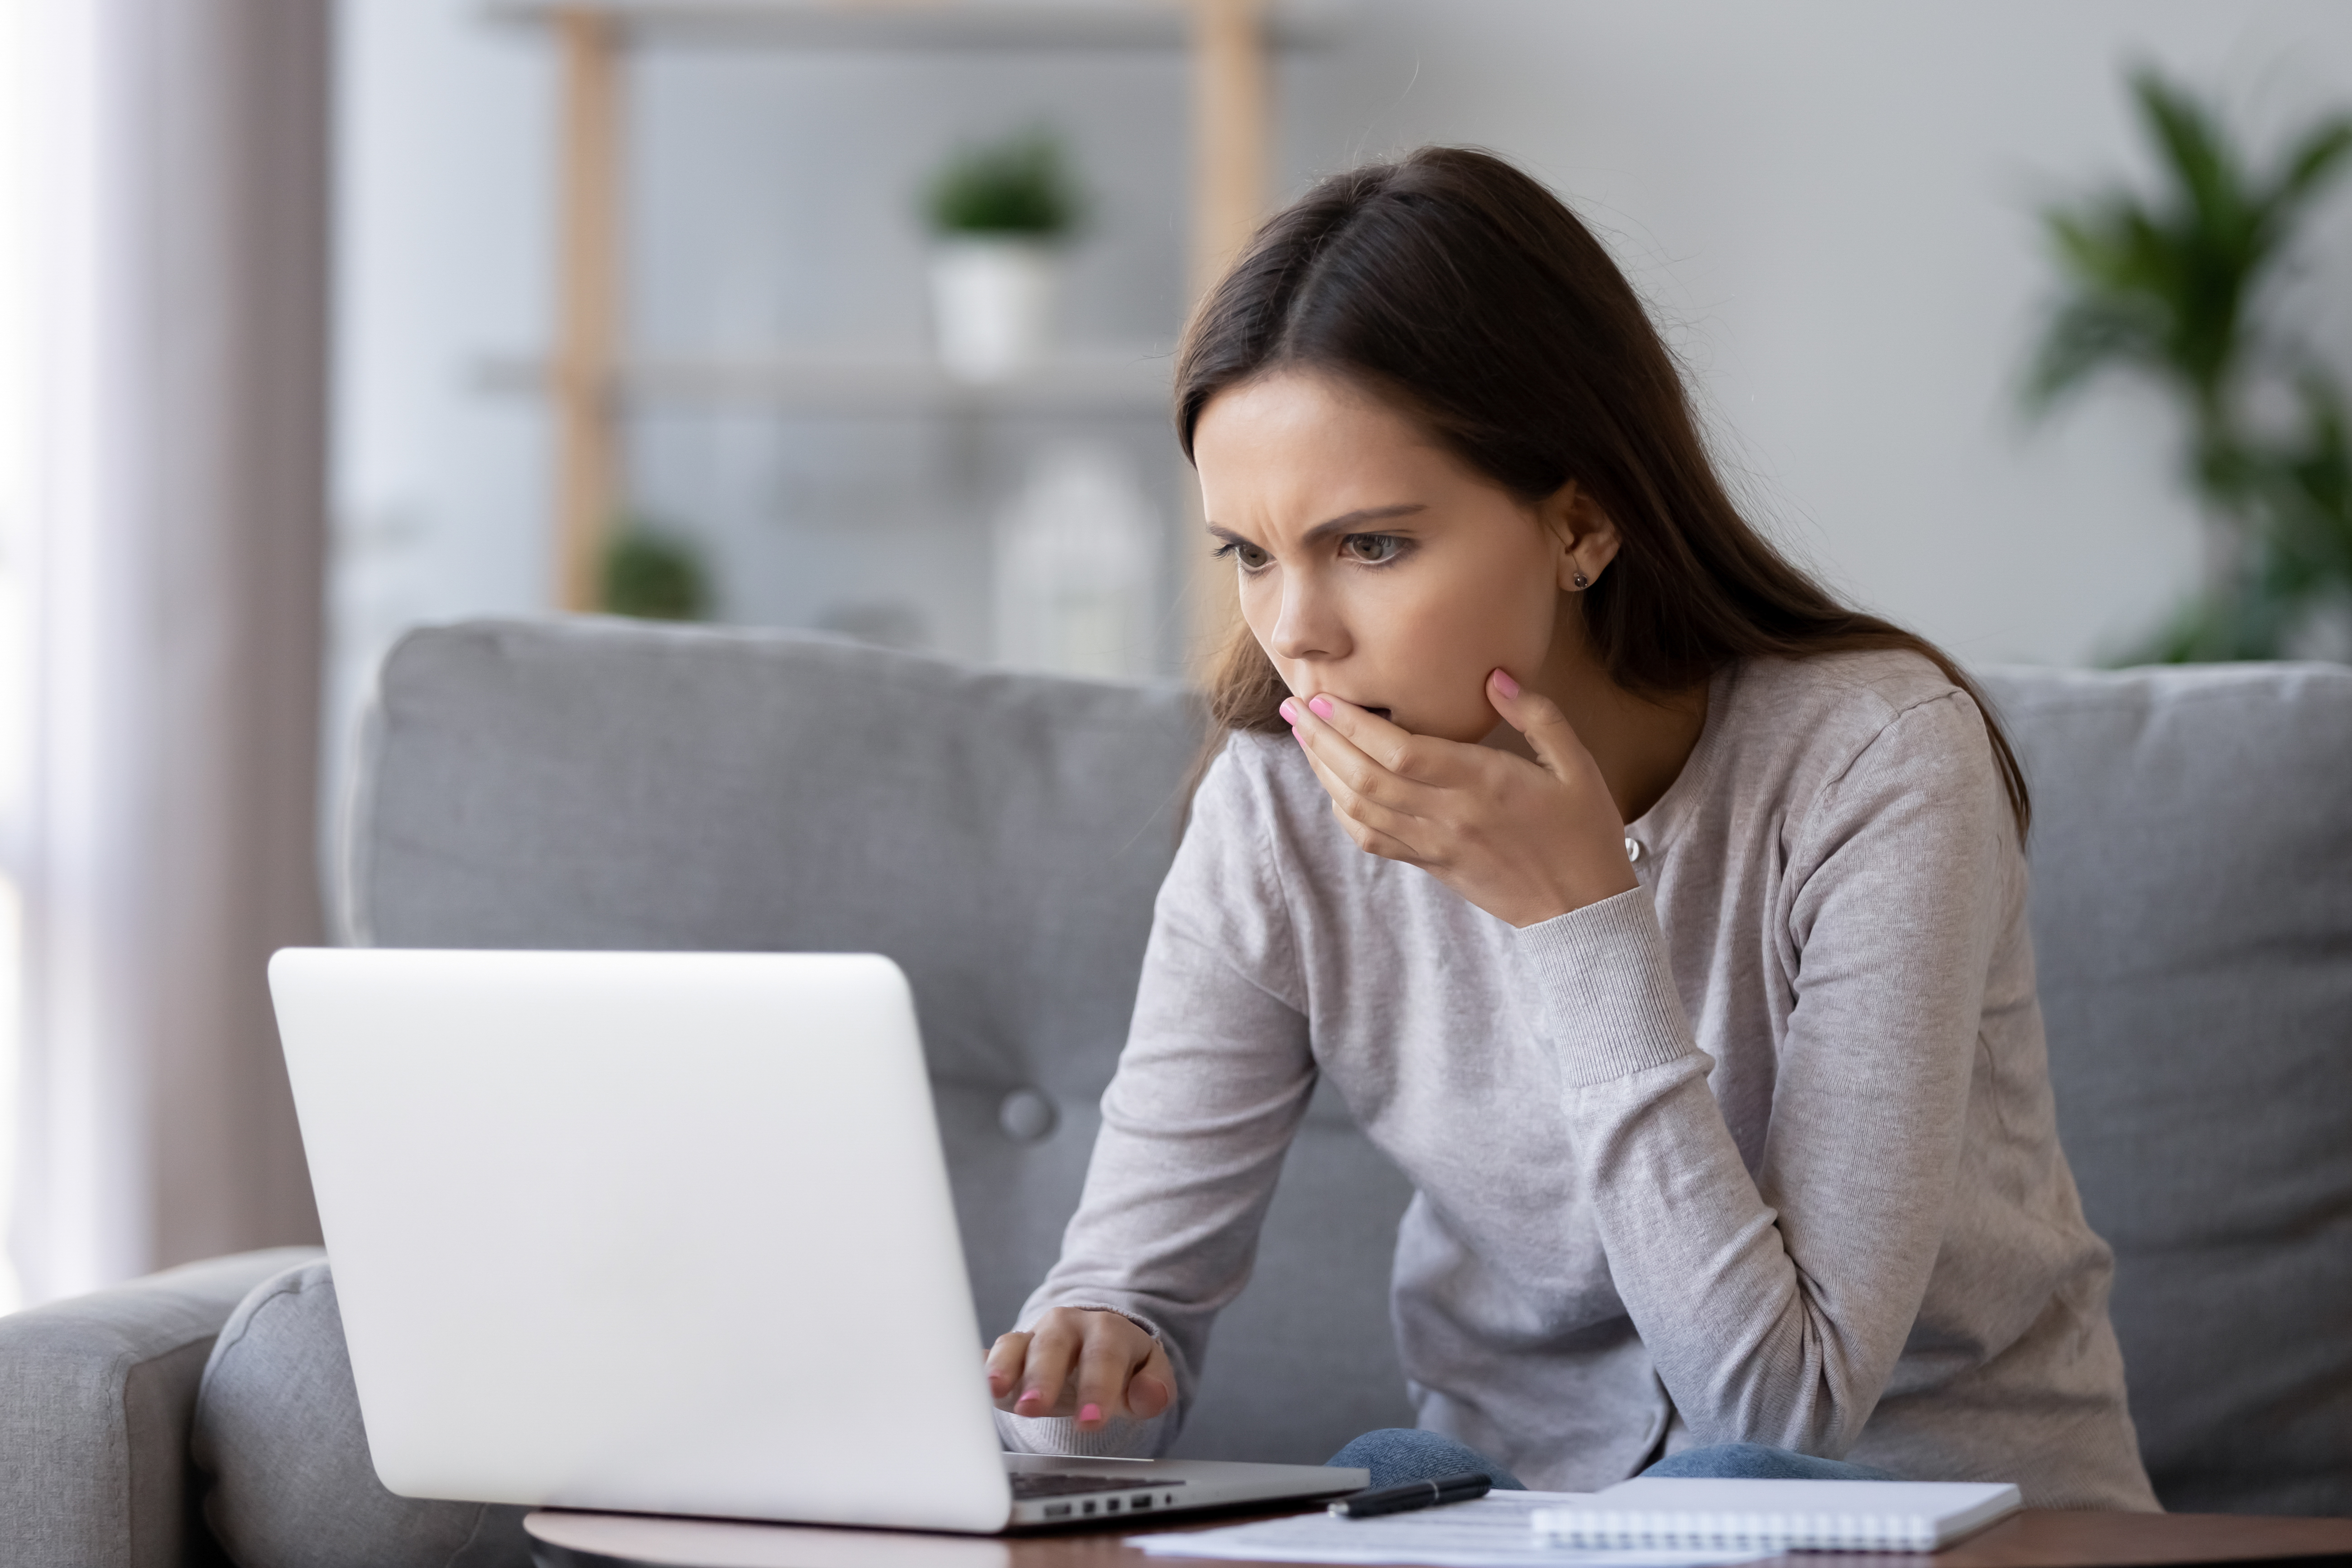 Eine Frau schockiert, nachdem sie etwas auf ihrem Laptop gesehen hat | Quelle: Shutterstock